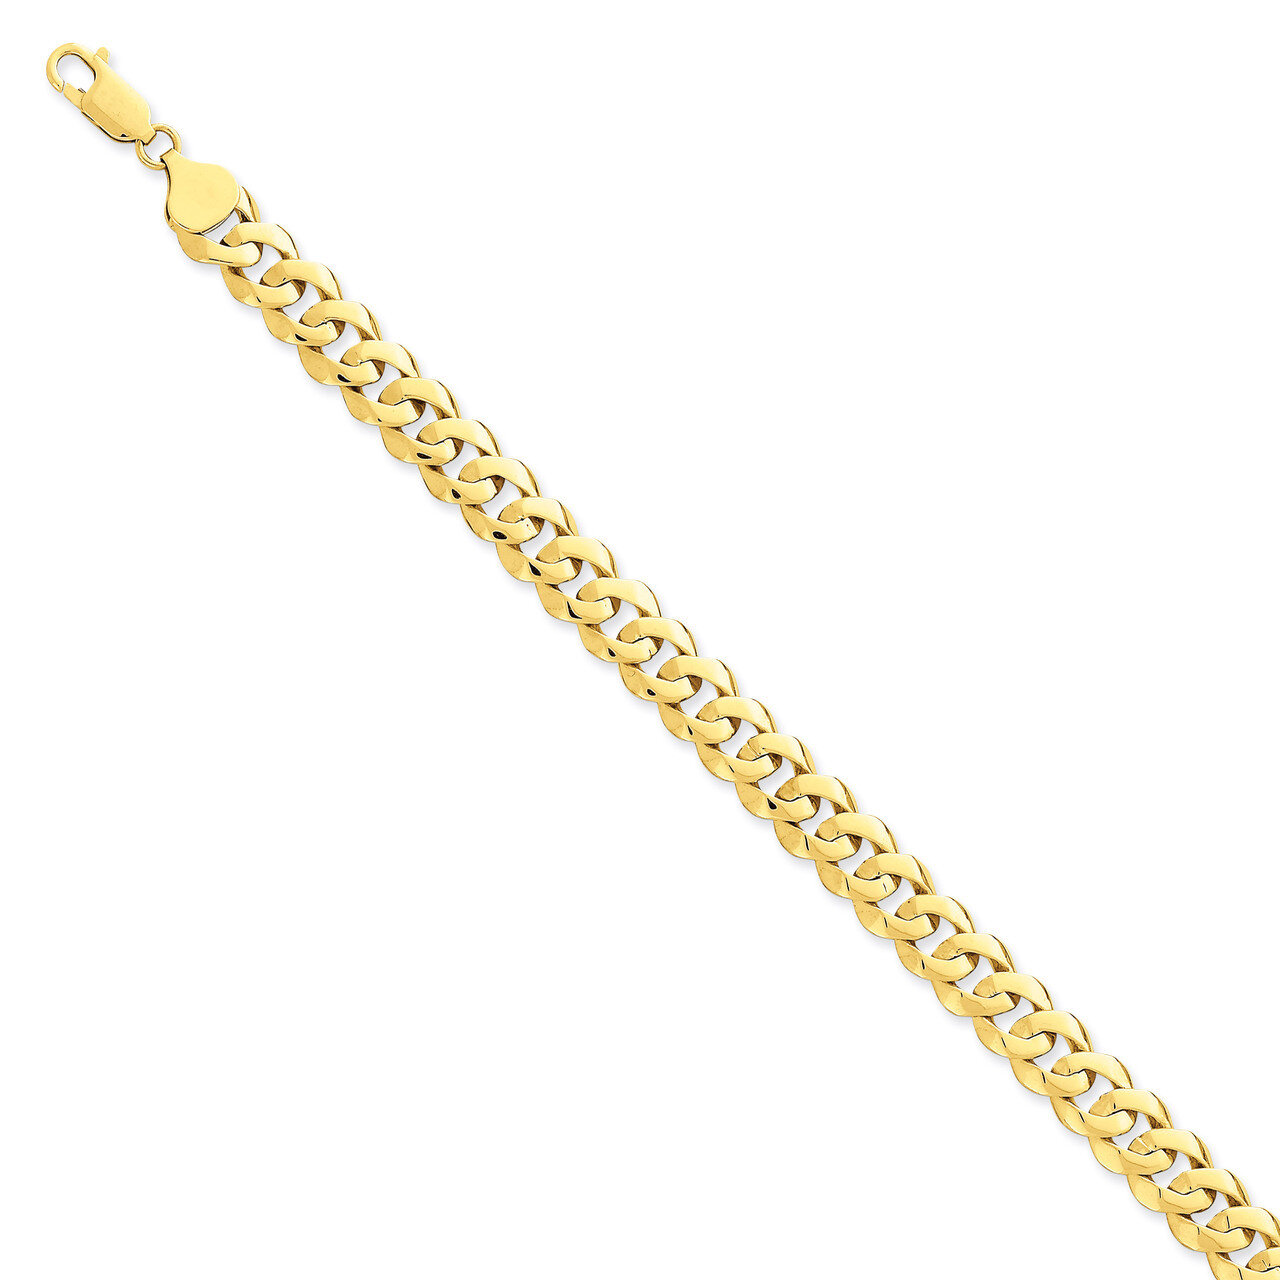 8.5mm Solid Hand-Polished Fancy Link Bracelet 7 Inch 14k Gold FL442-7